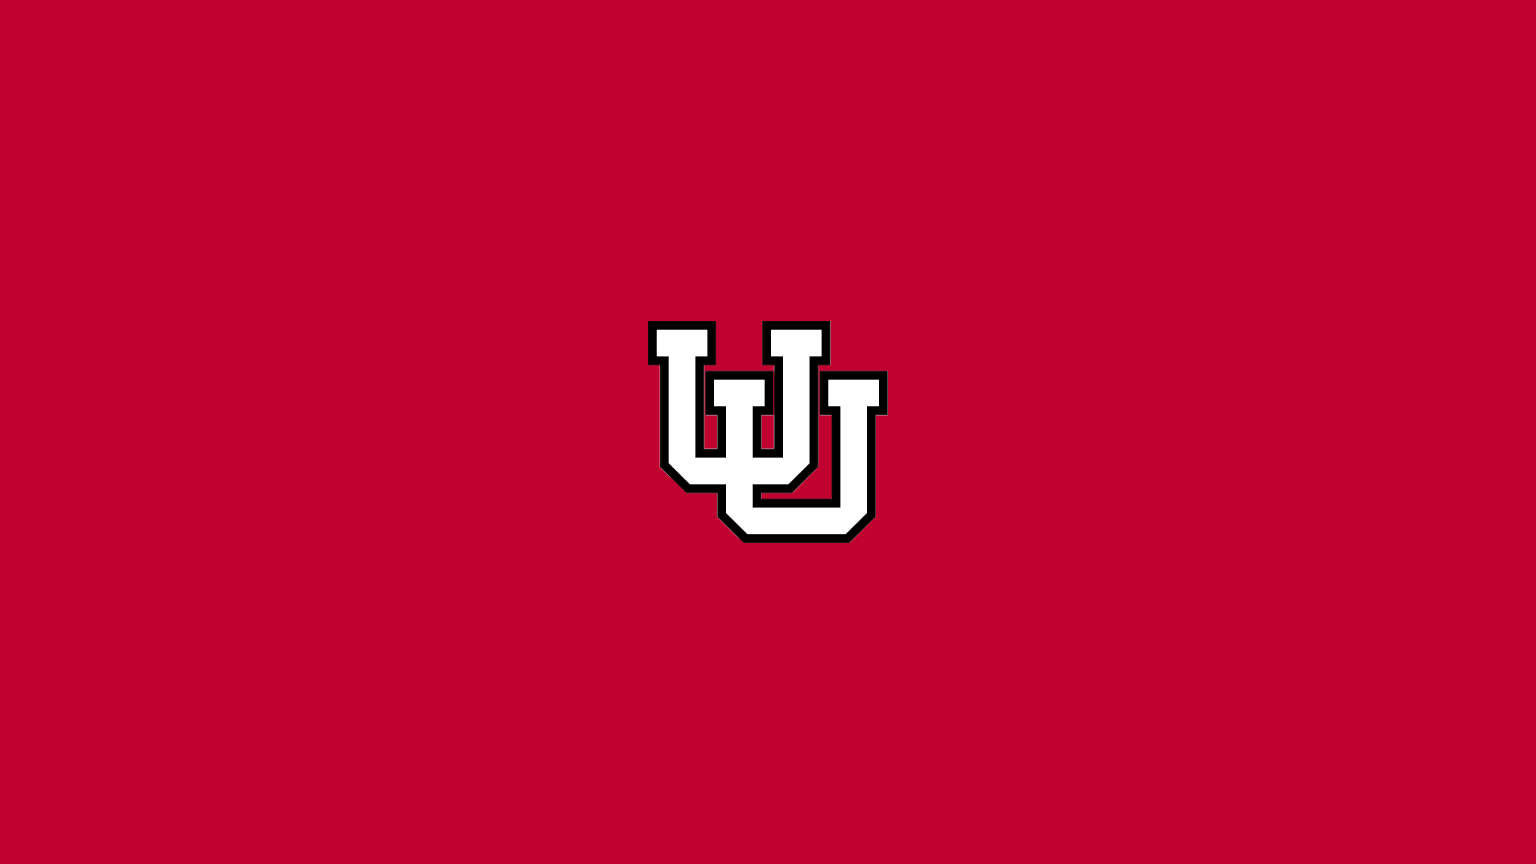 Utah Utes - NCAAF - Square Bettor